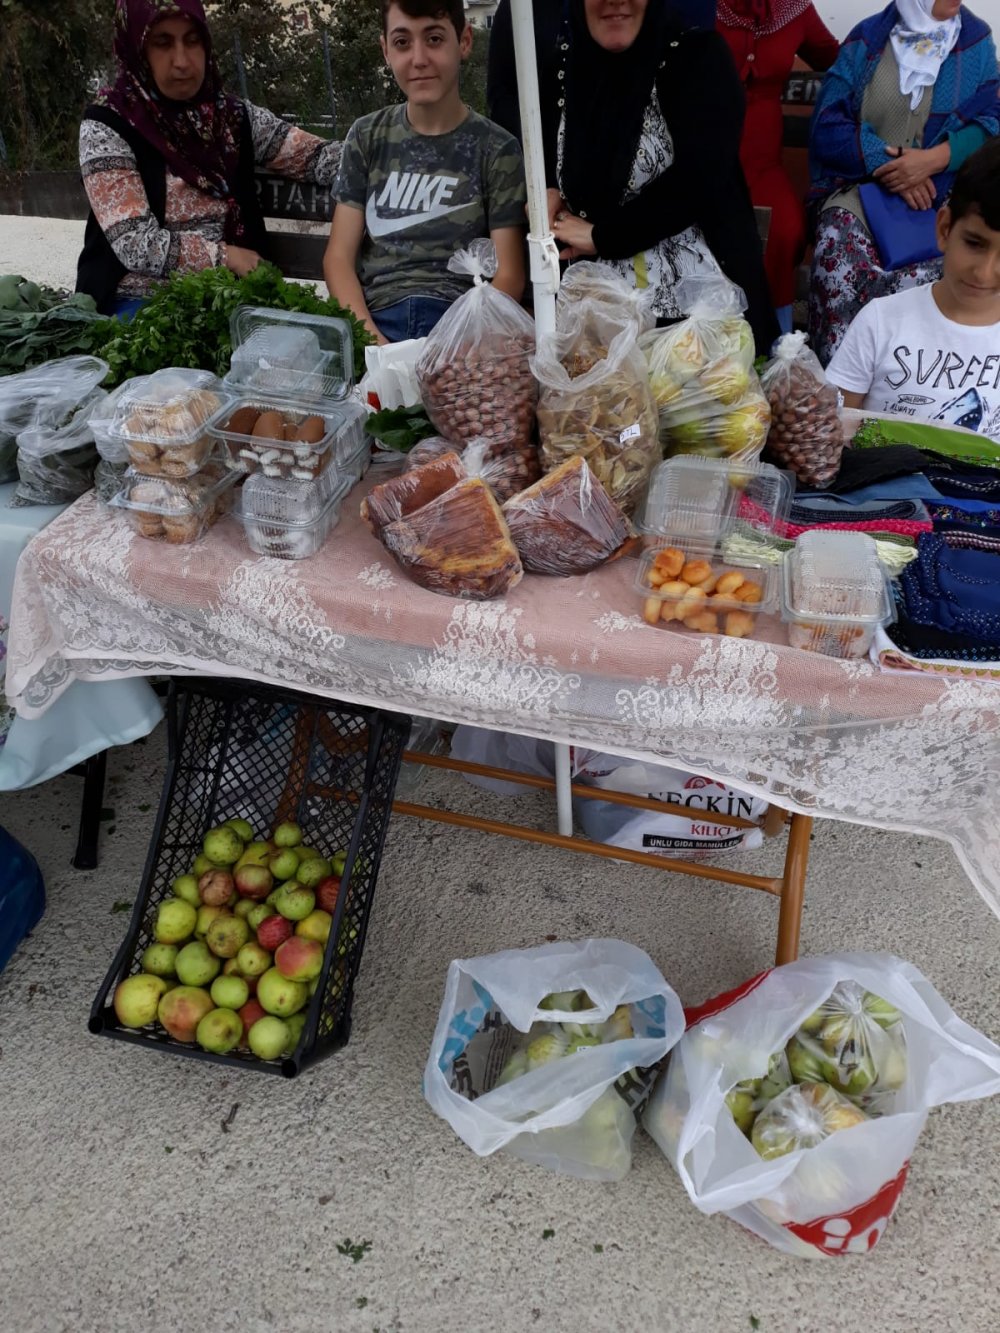 Trabzon'da mahalle halkı kendi organik pazarını kurdu